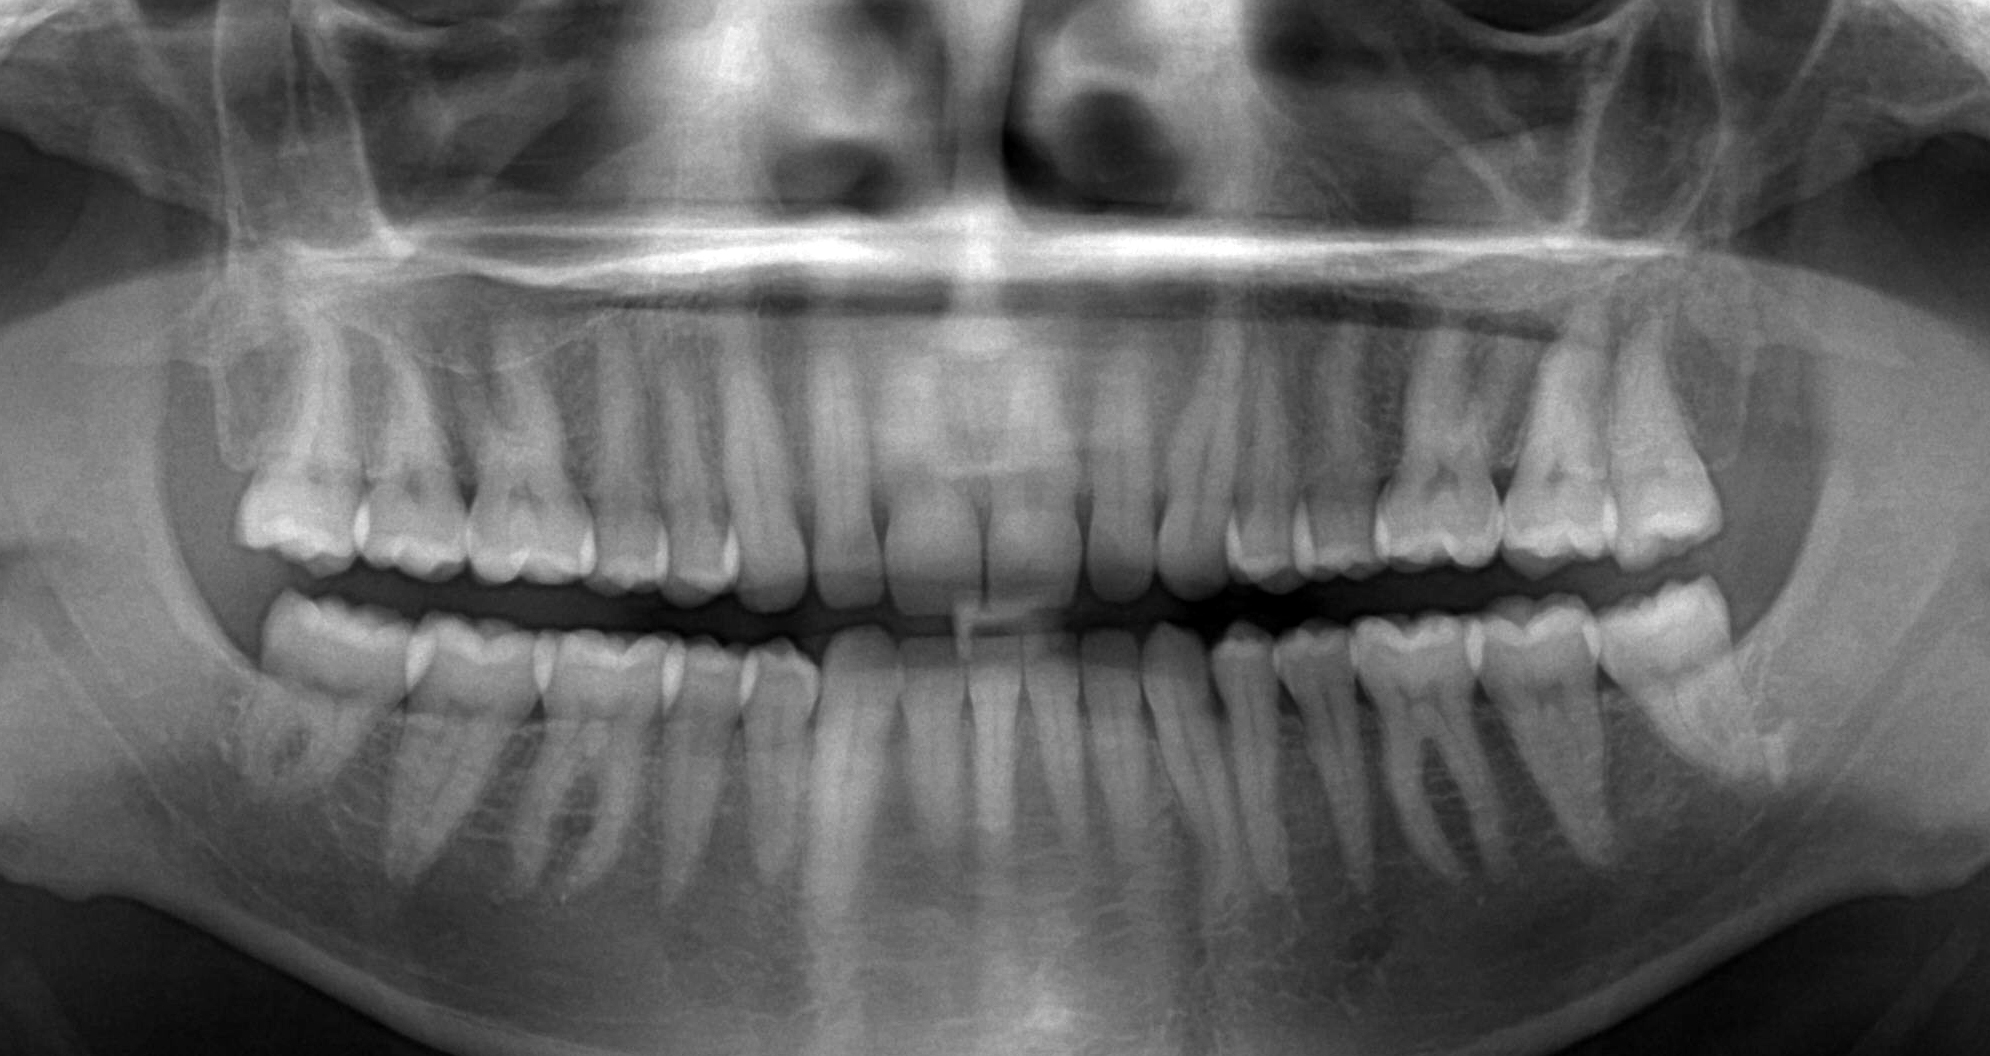 Панорамний знімок зубів: як роблять і для чого? » журнал здоров'я iHealth 